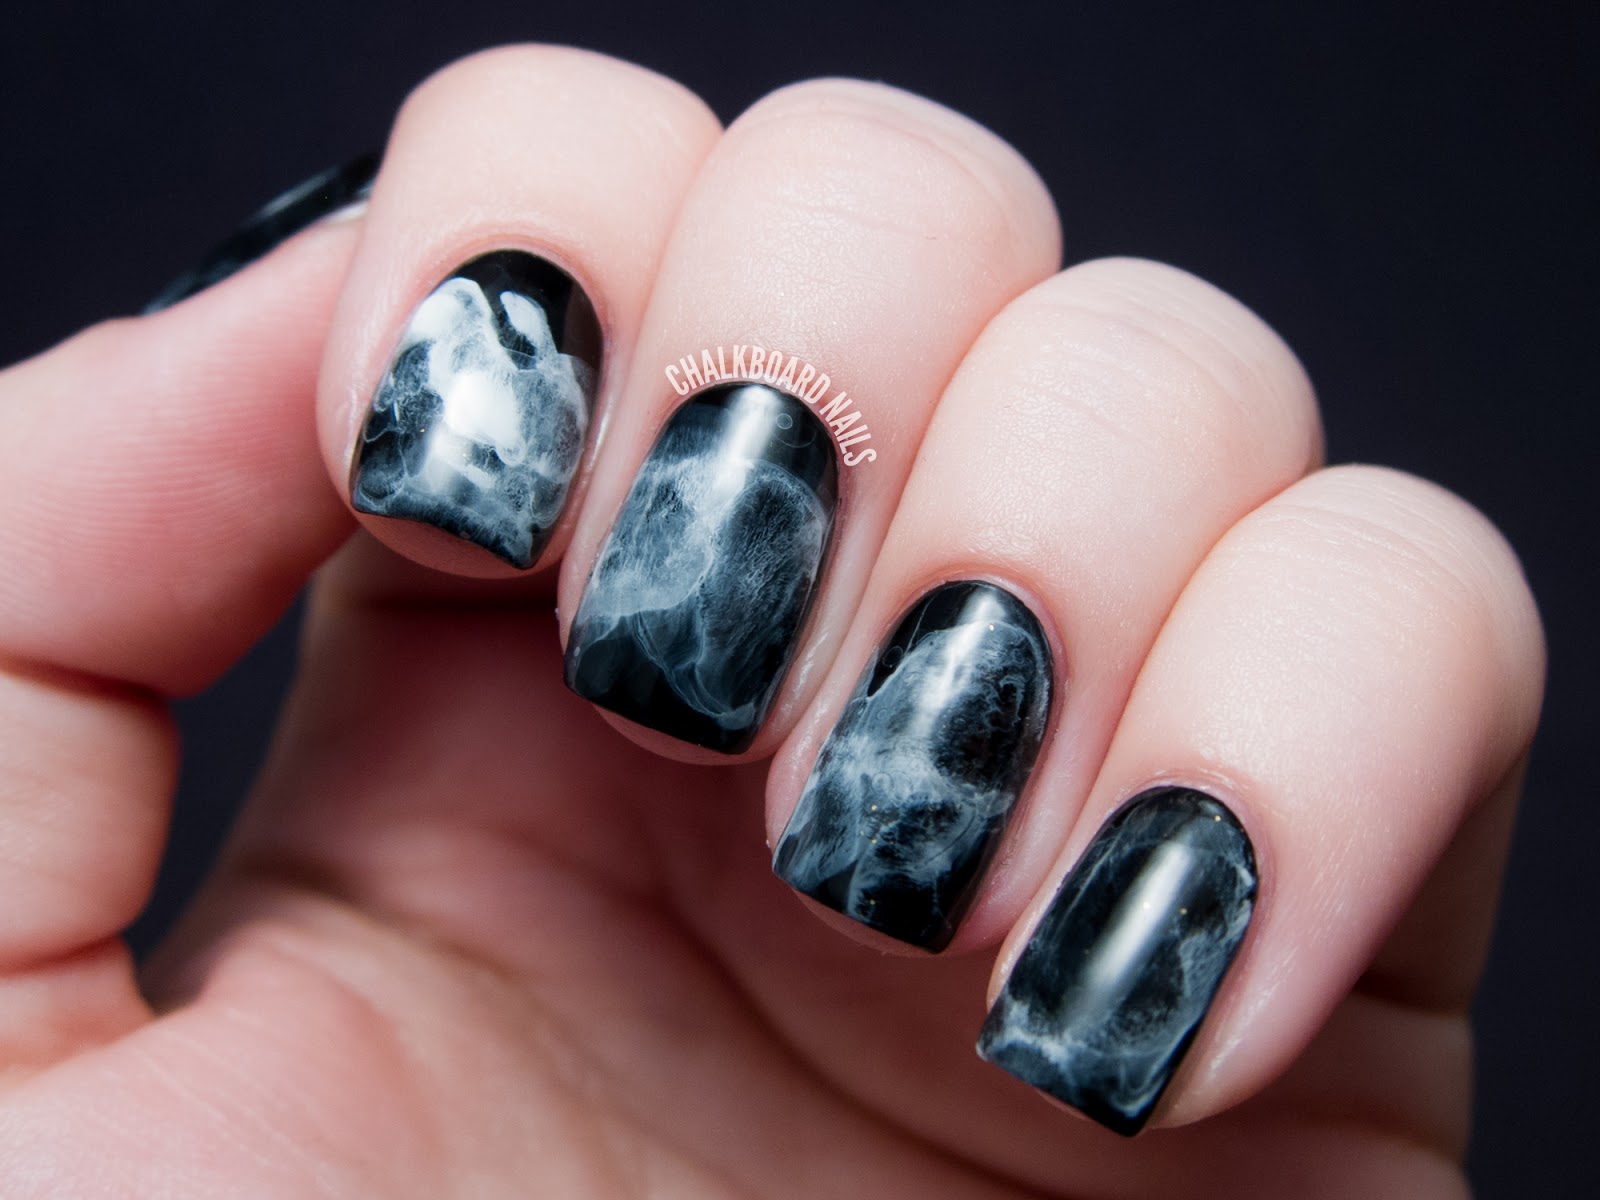 black white nail design picture